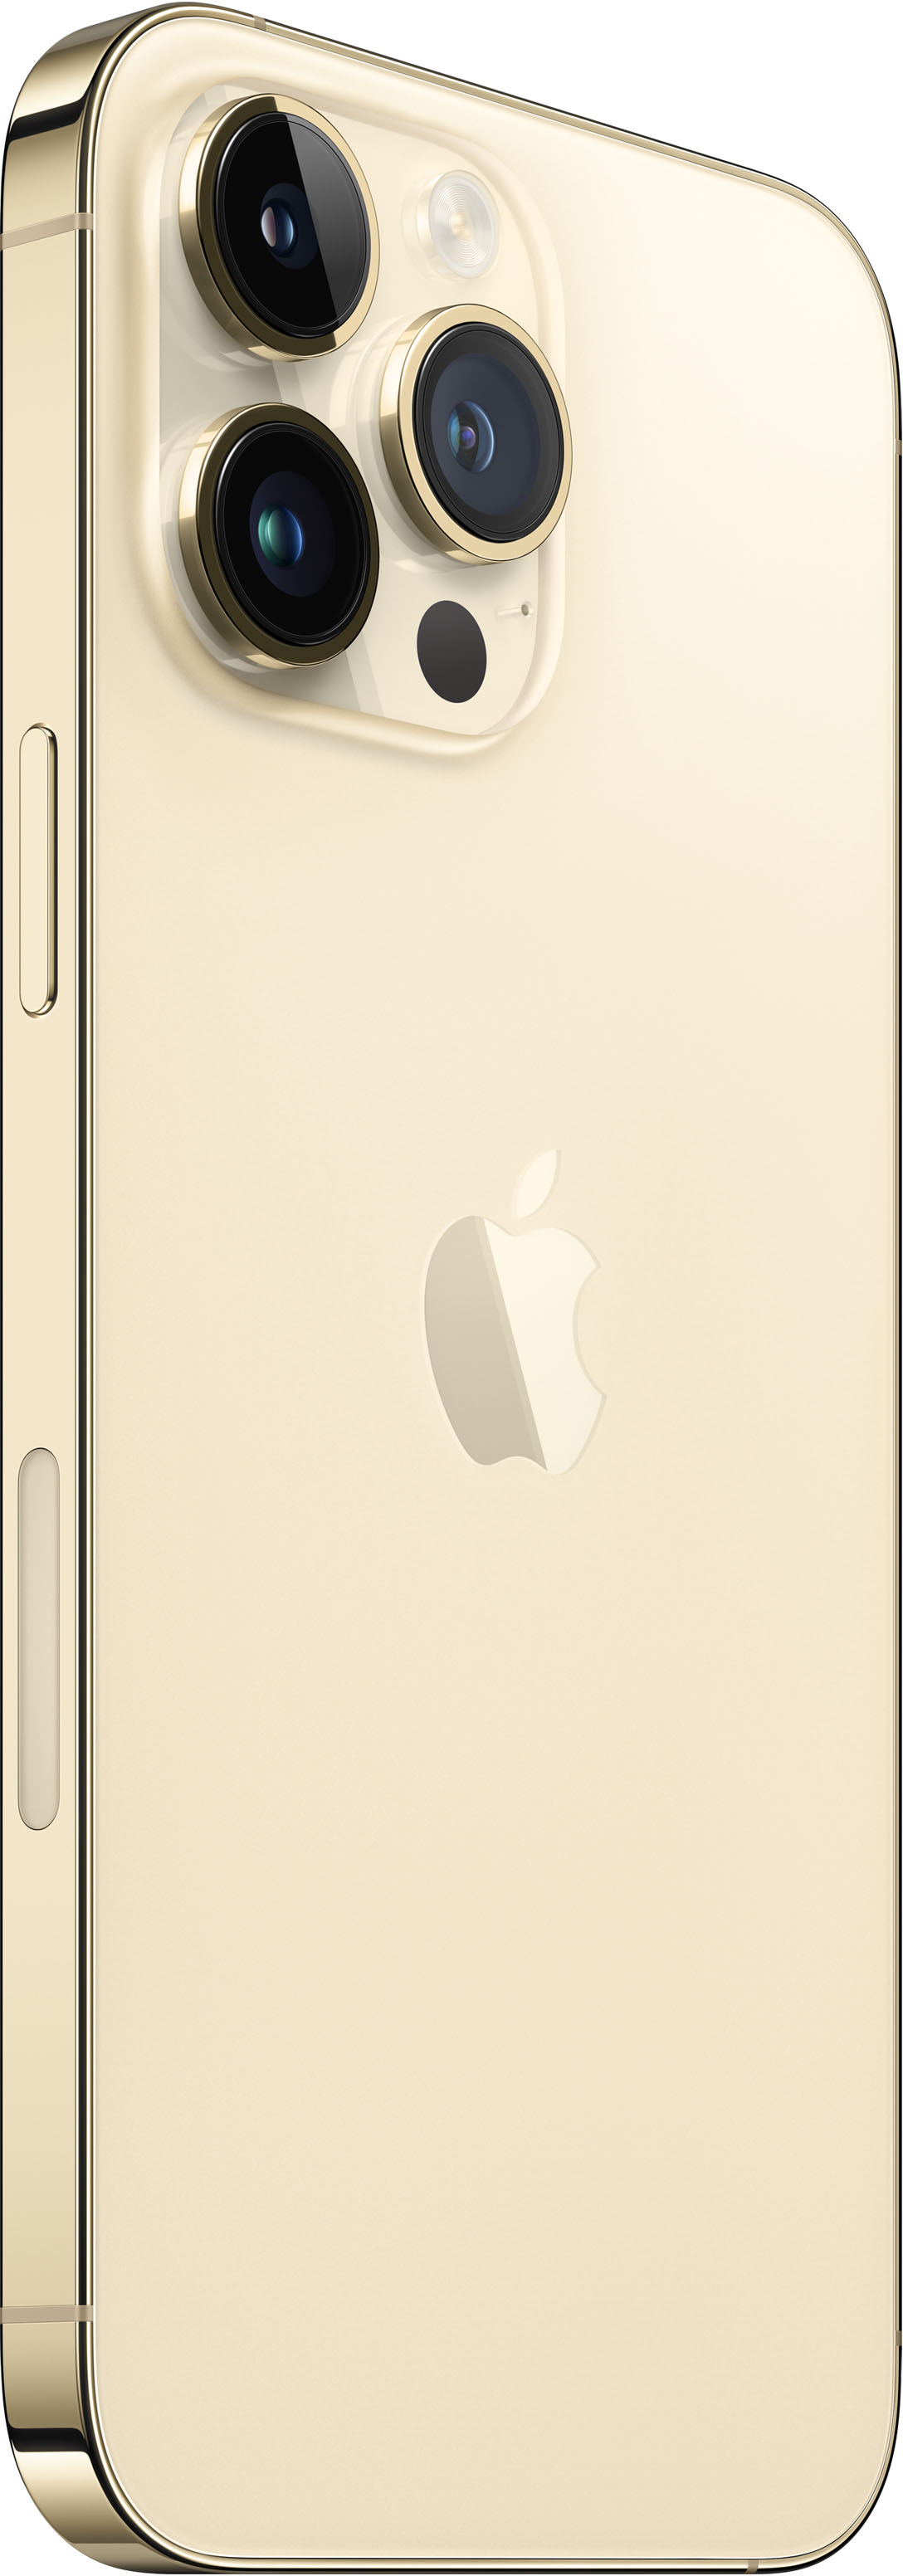 Apple iPhone 14 Pro Max 128GB Gold (Verizon) MQ8Q3LL/A - Best Buy